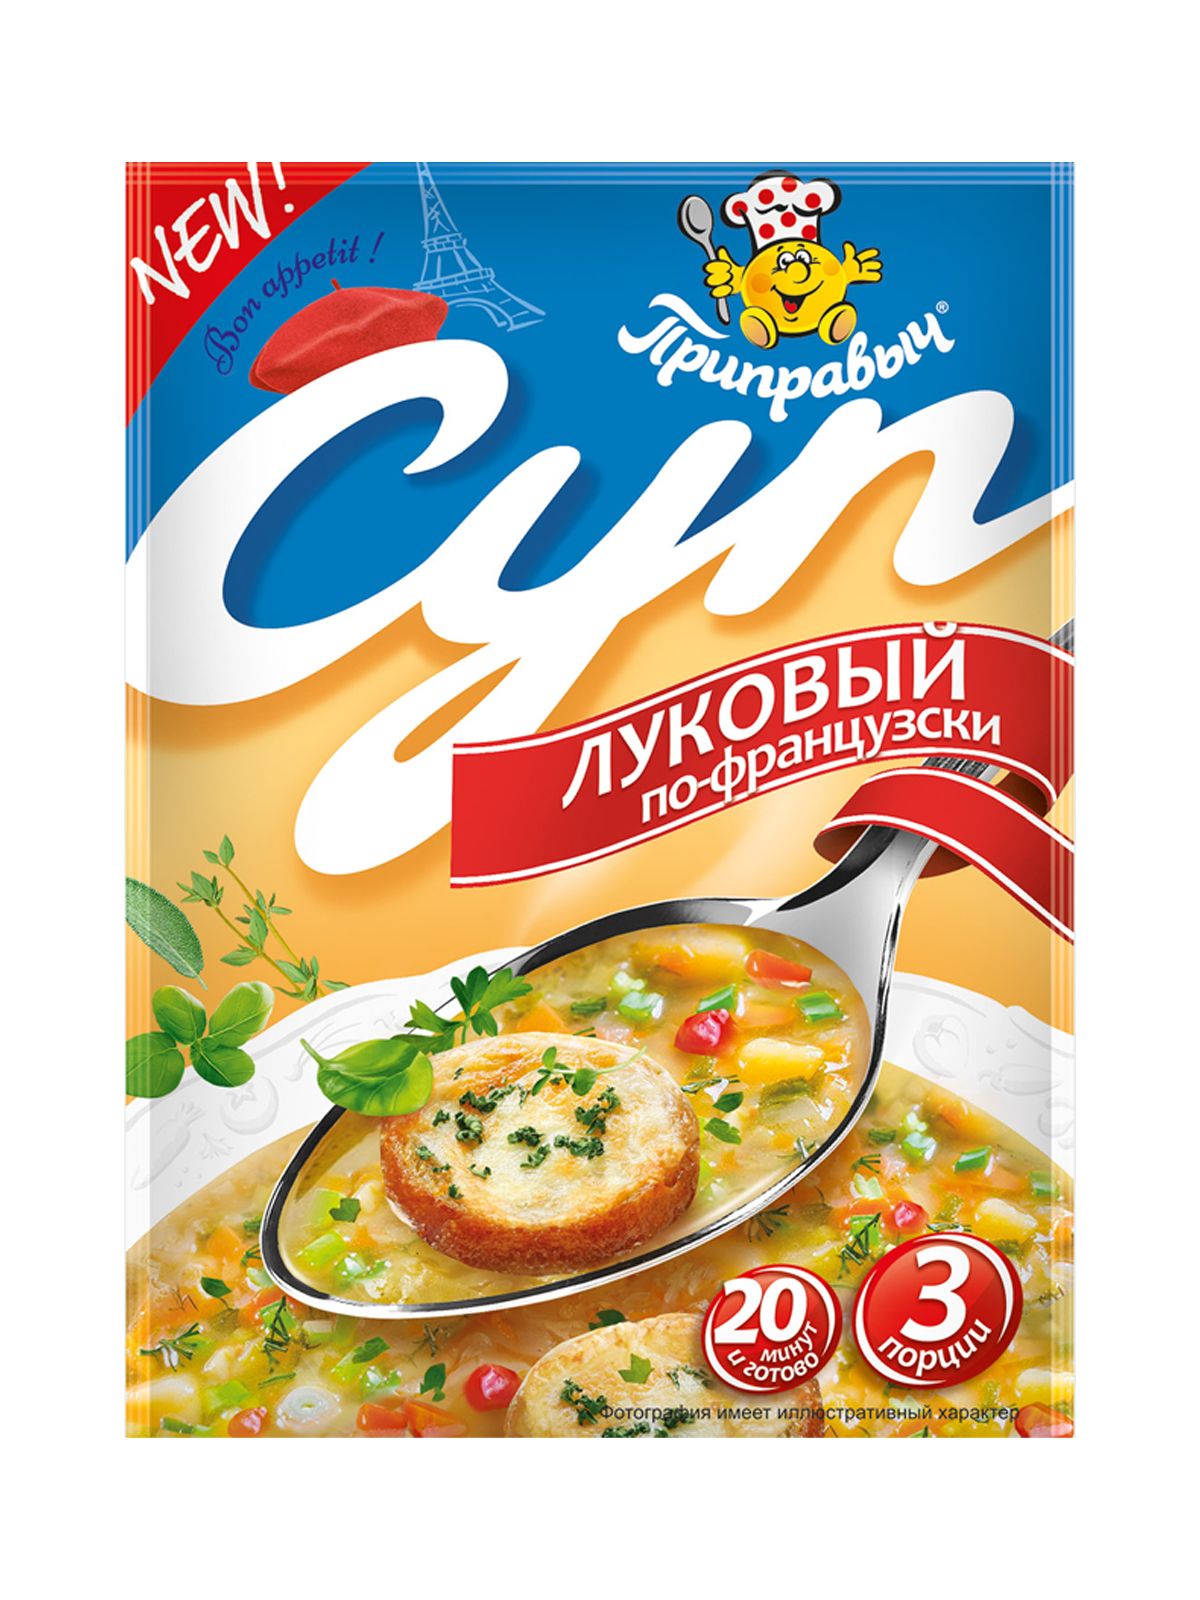 Суп Луковый по-французски, Приправыч, 8 шт. по 50 гр.